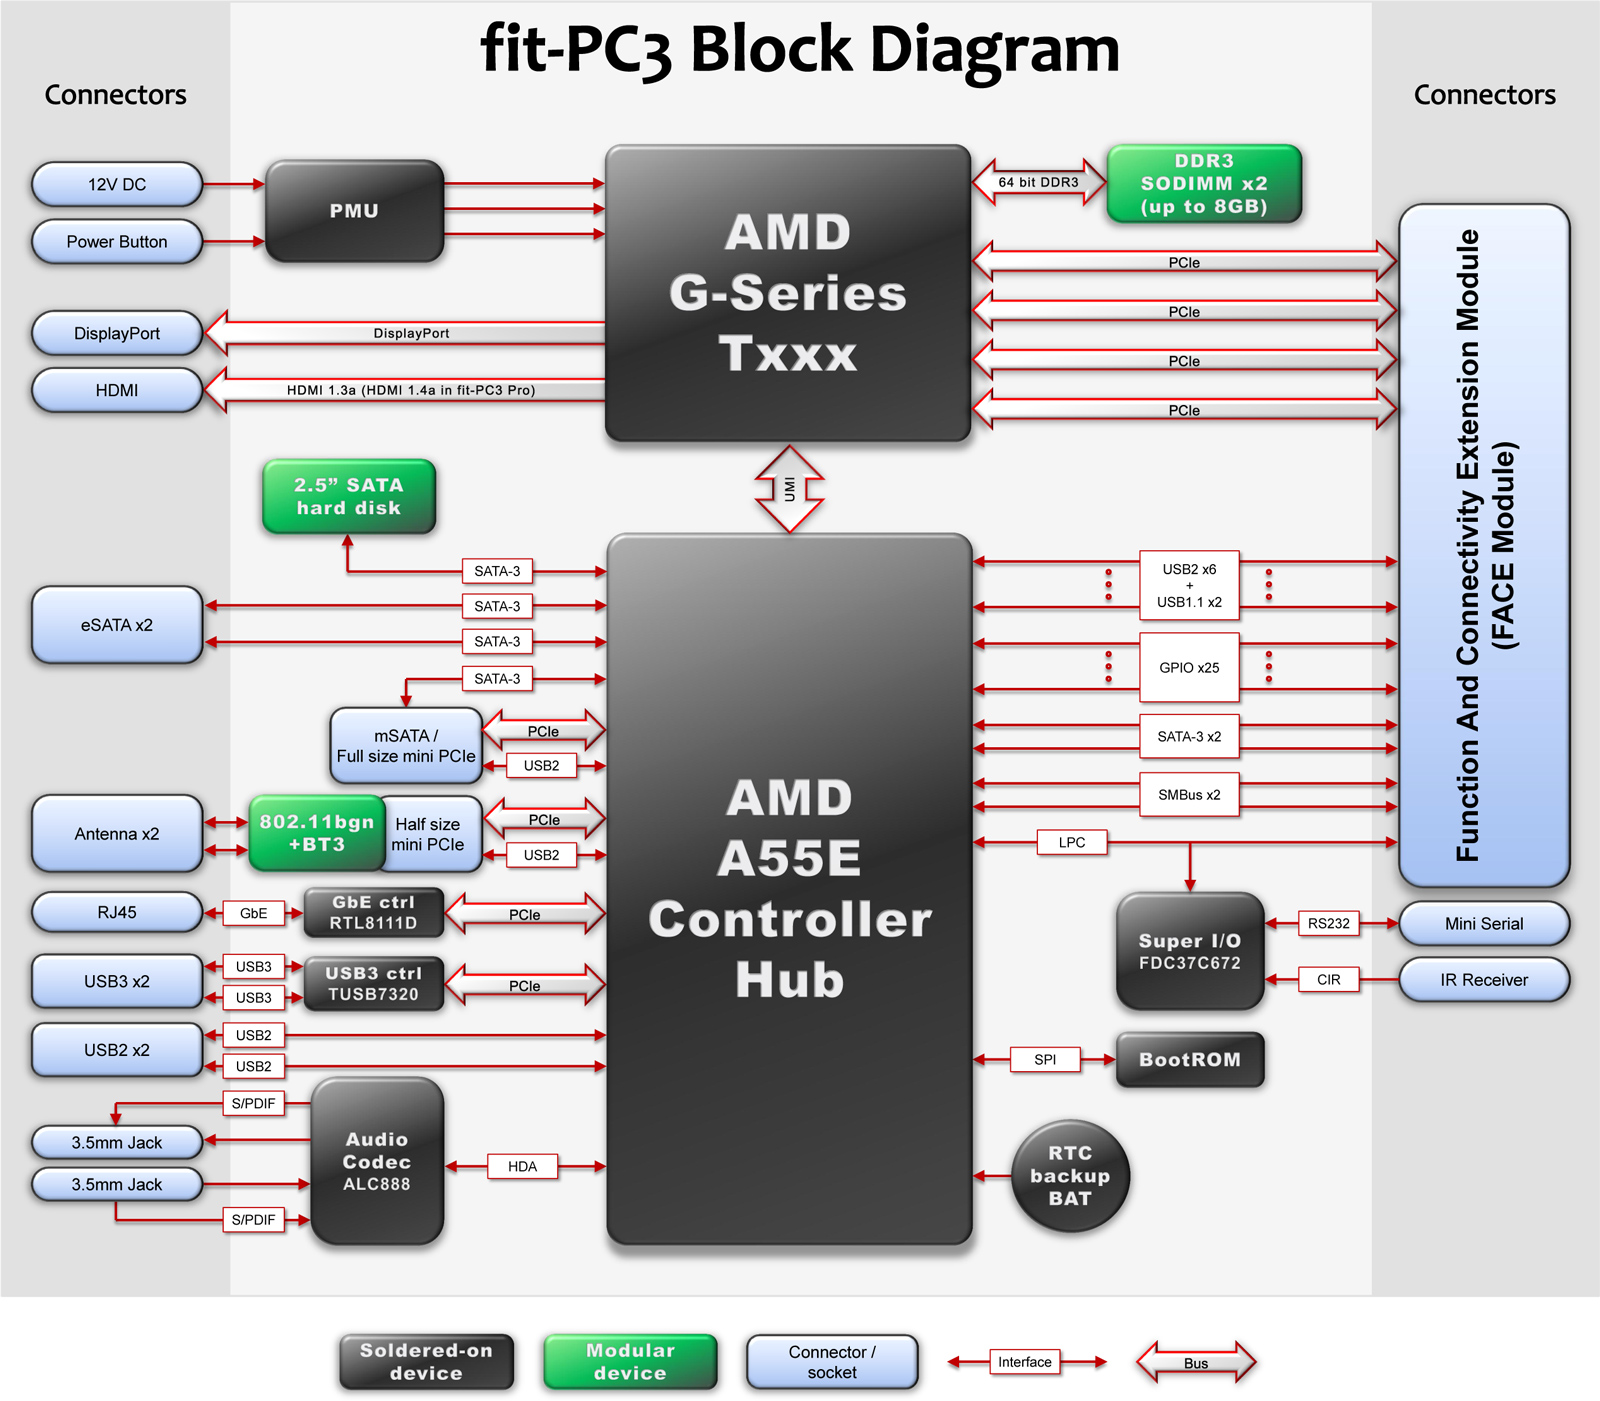 fit-PC3-block-diagram.jpg